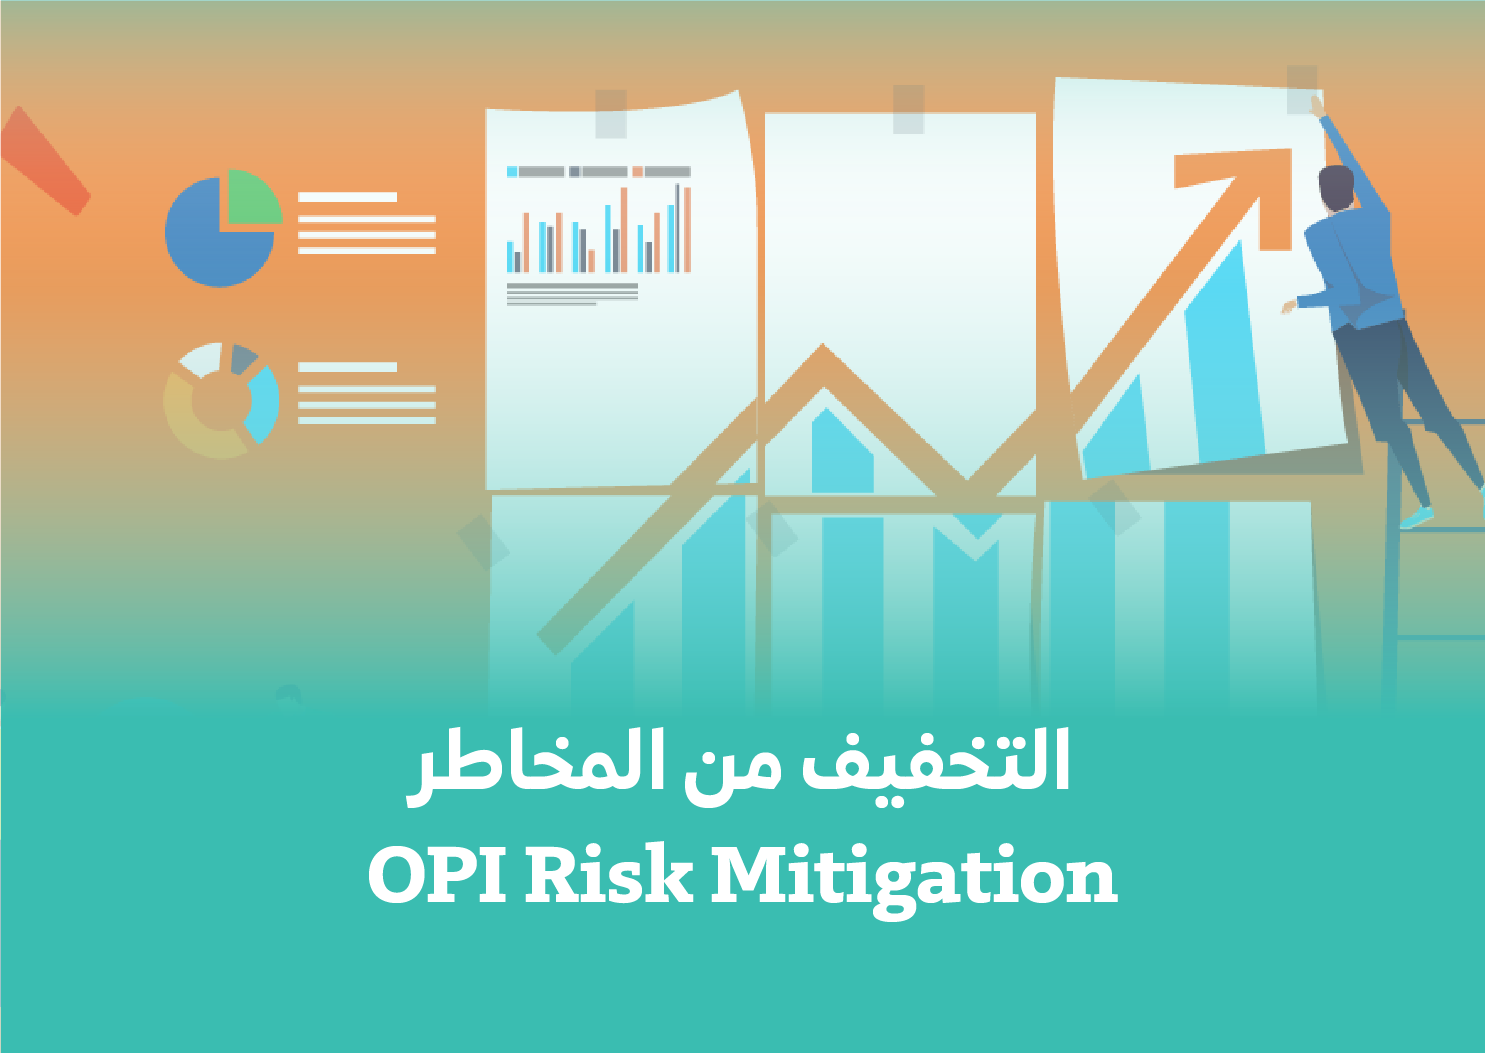 OPI Risk Mitigation